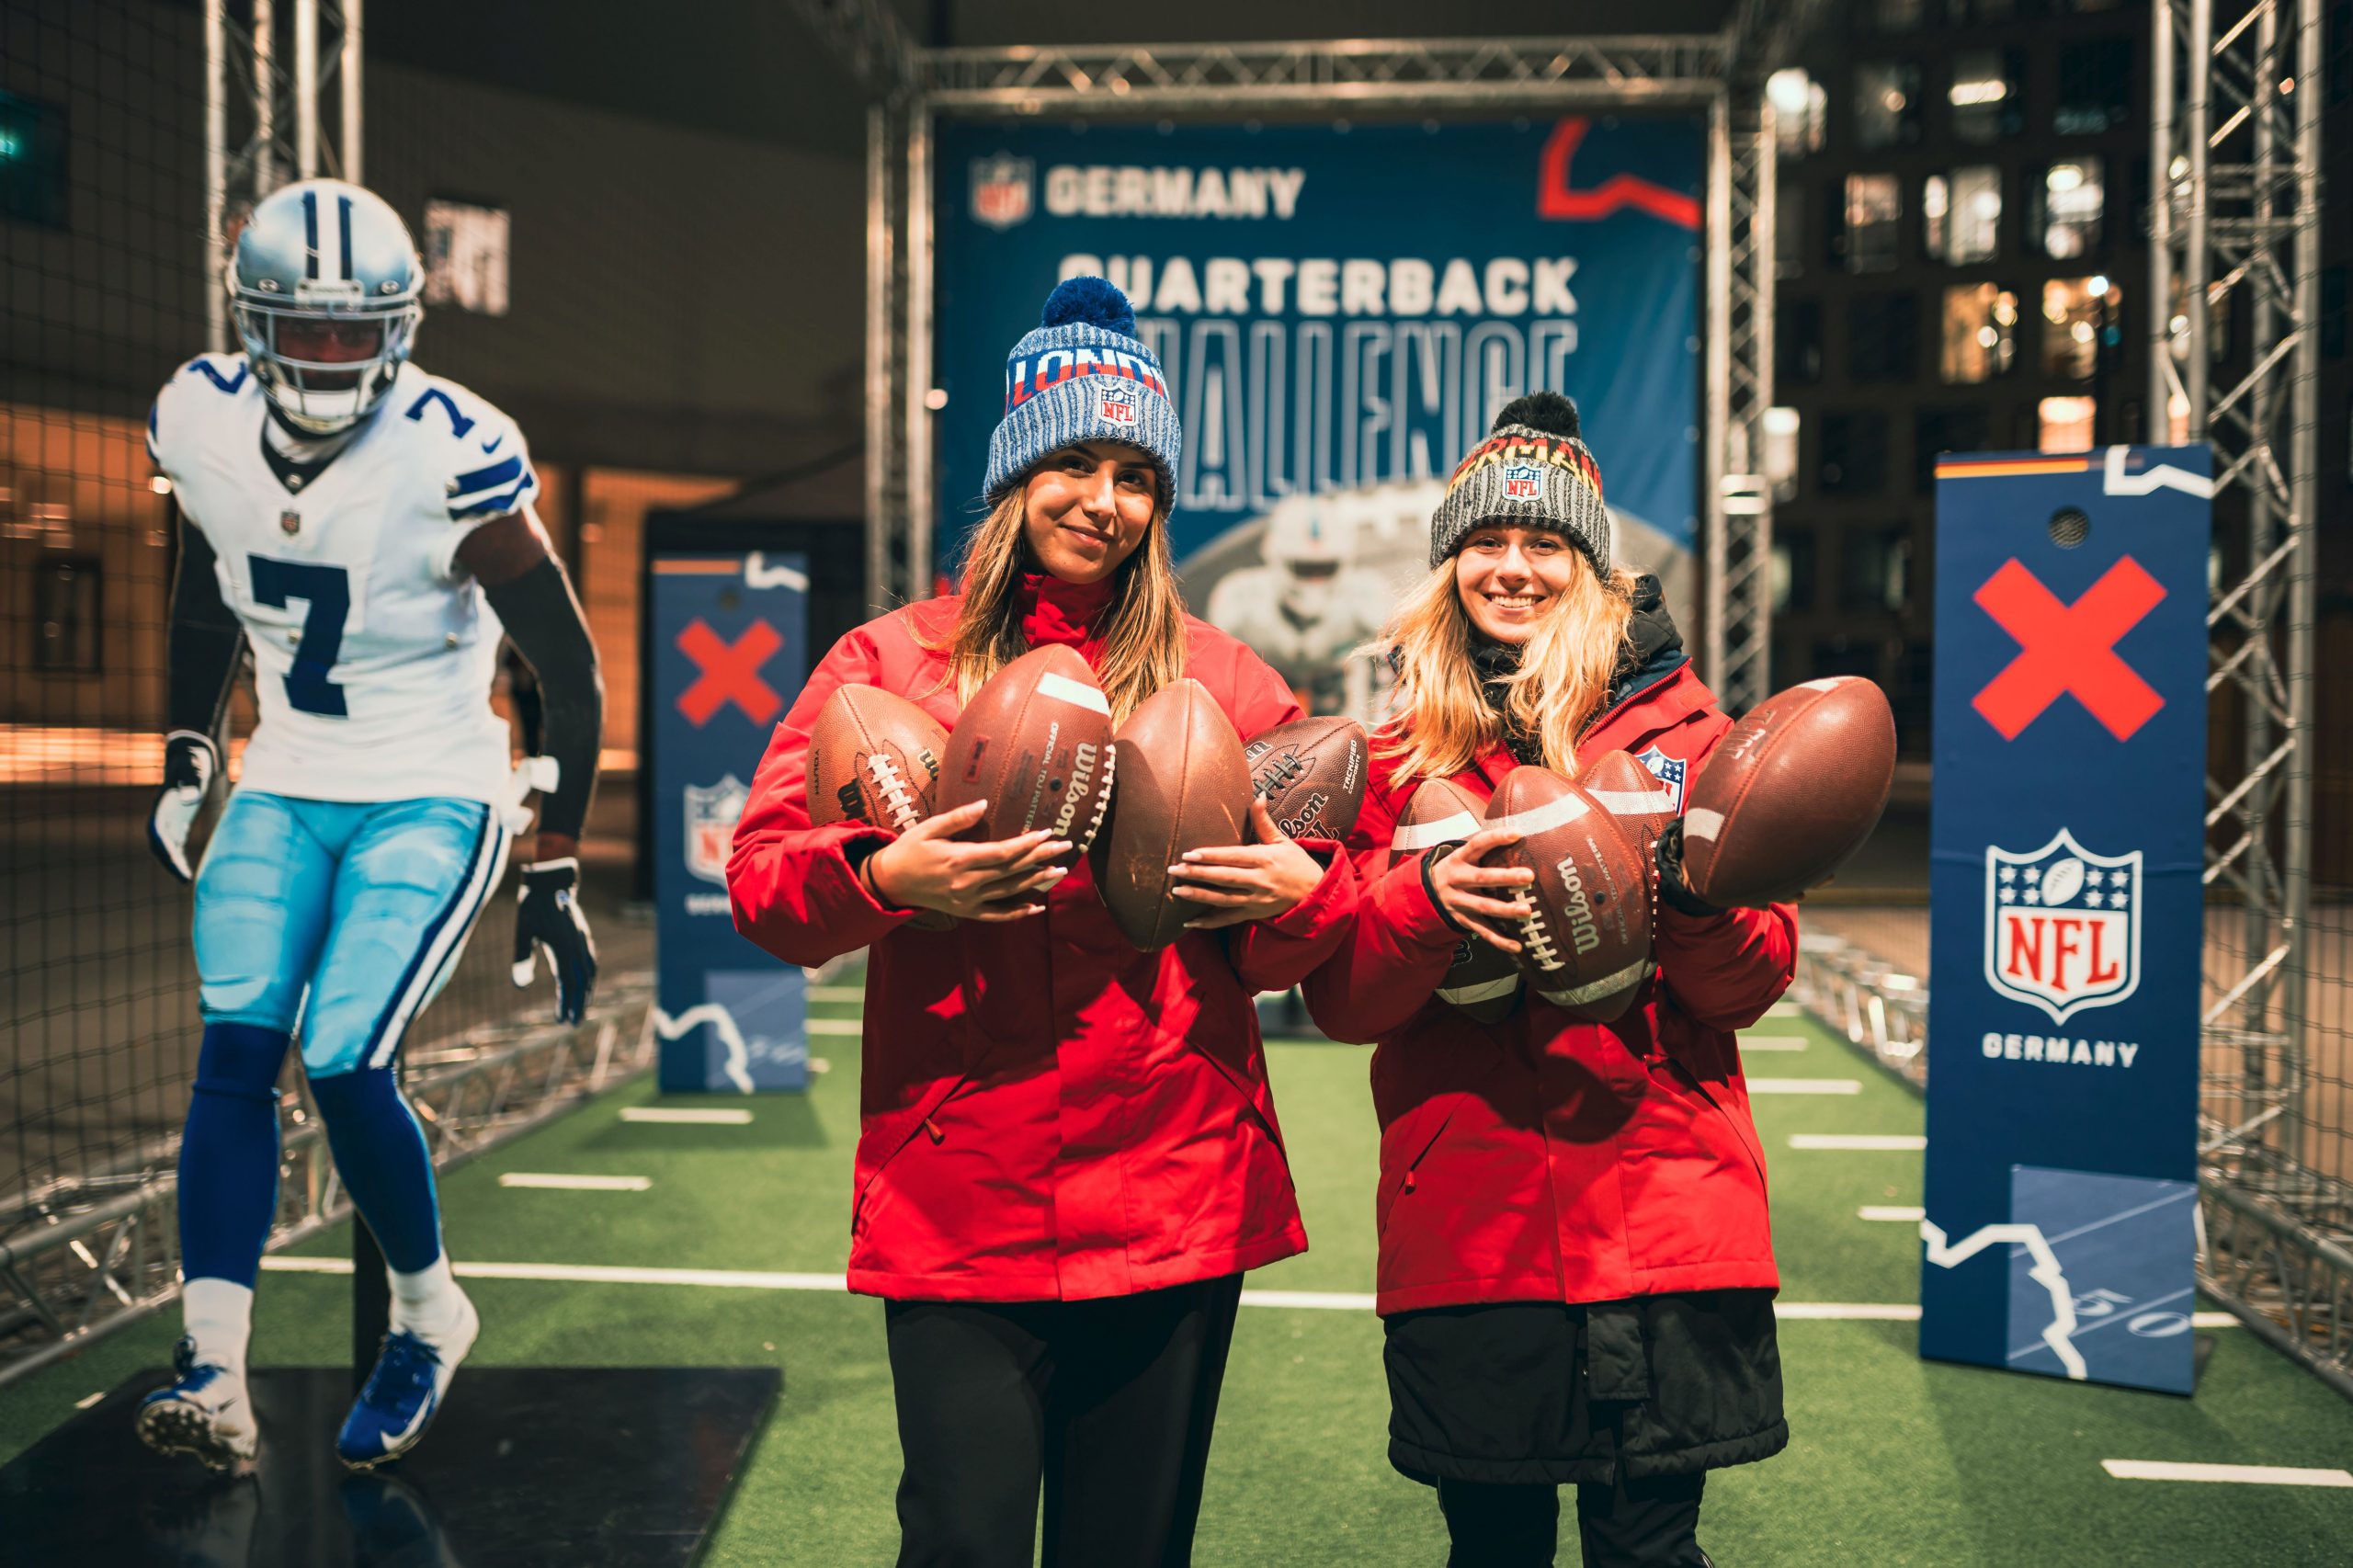 FootballR - NFL - Zwei Frauen halten während der Weihnachtszeit Fußbälle auf einer NFL-Bühne.